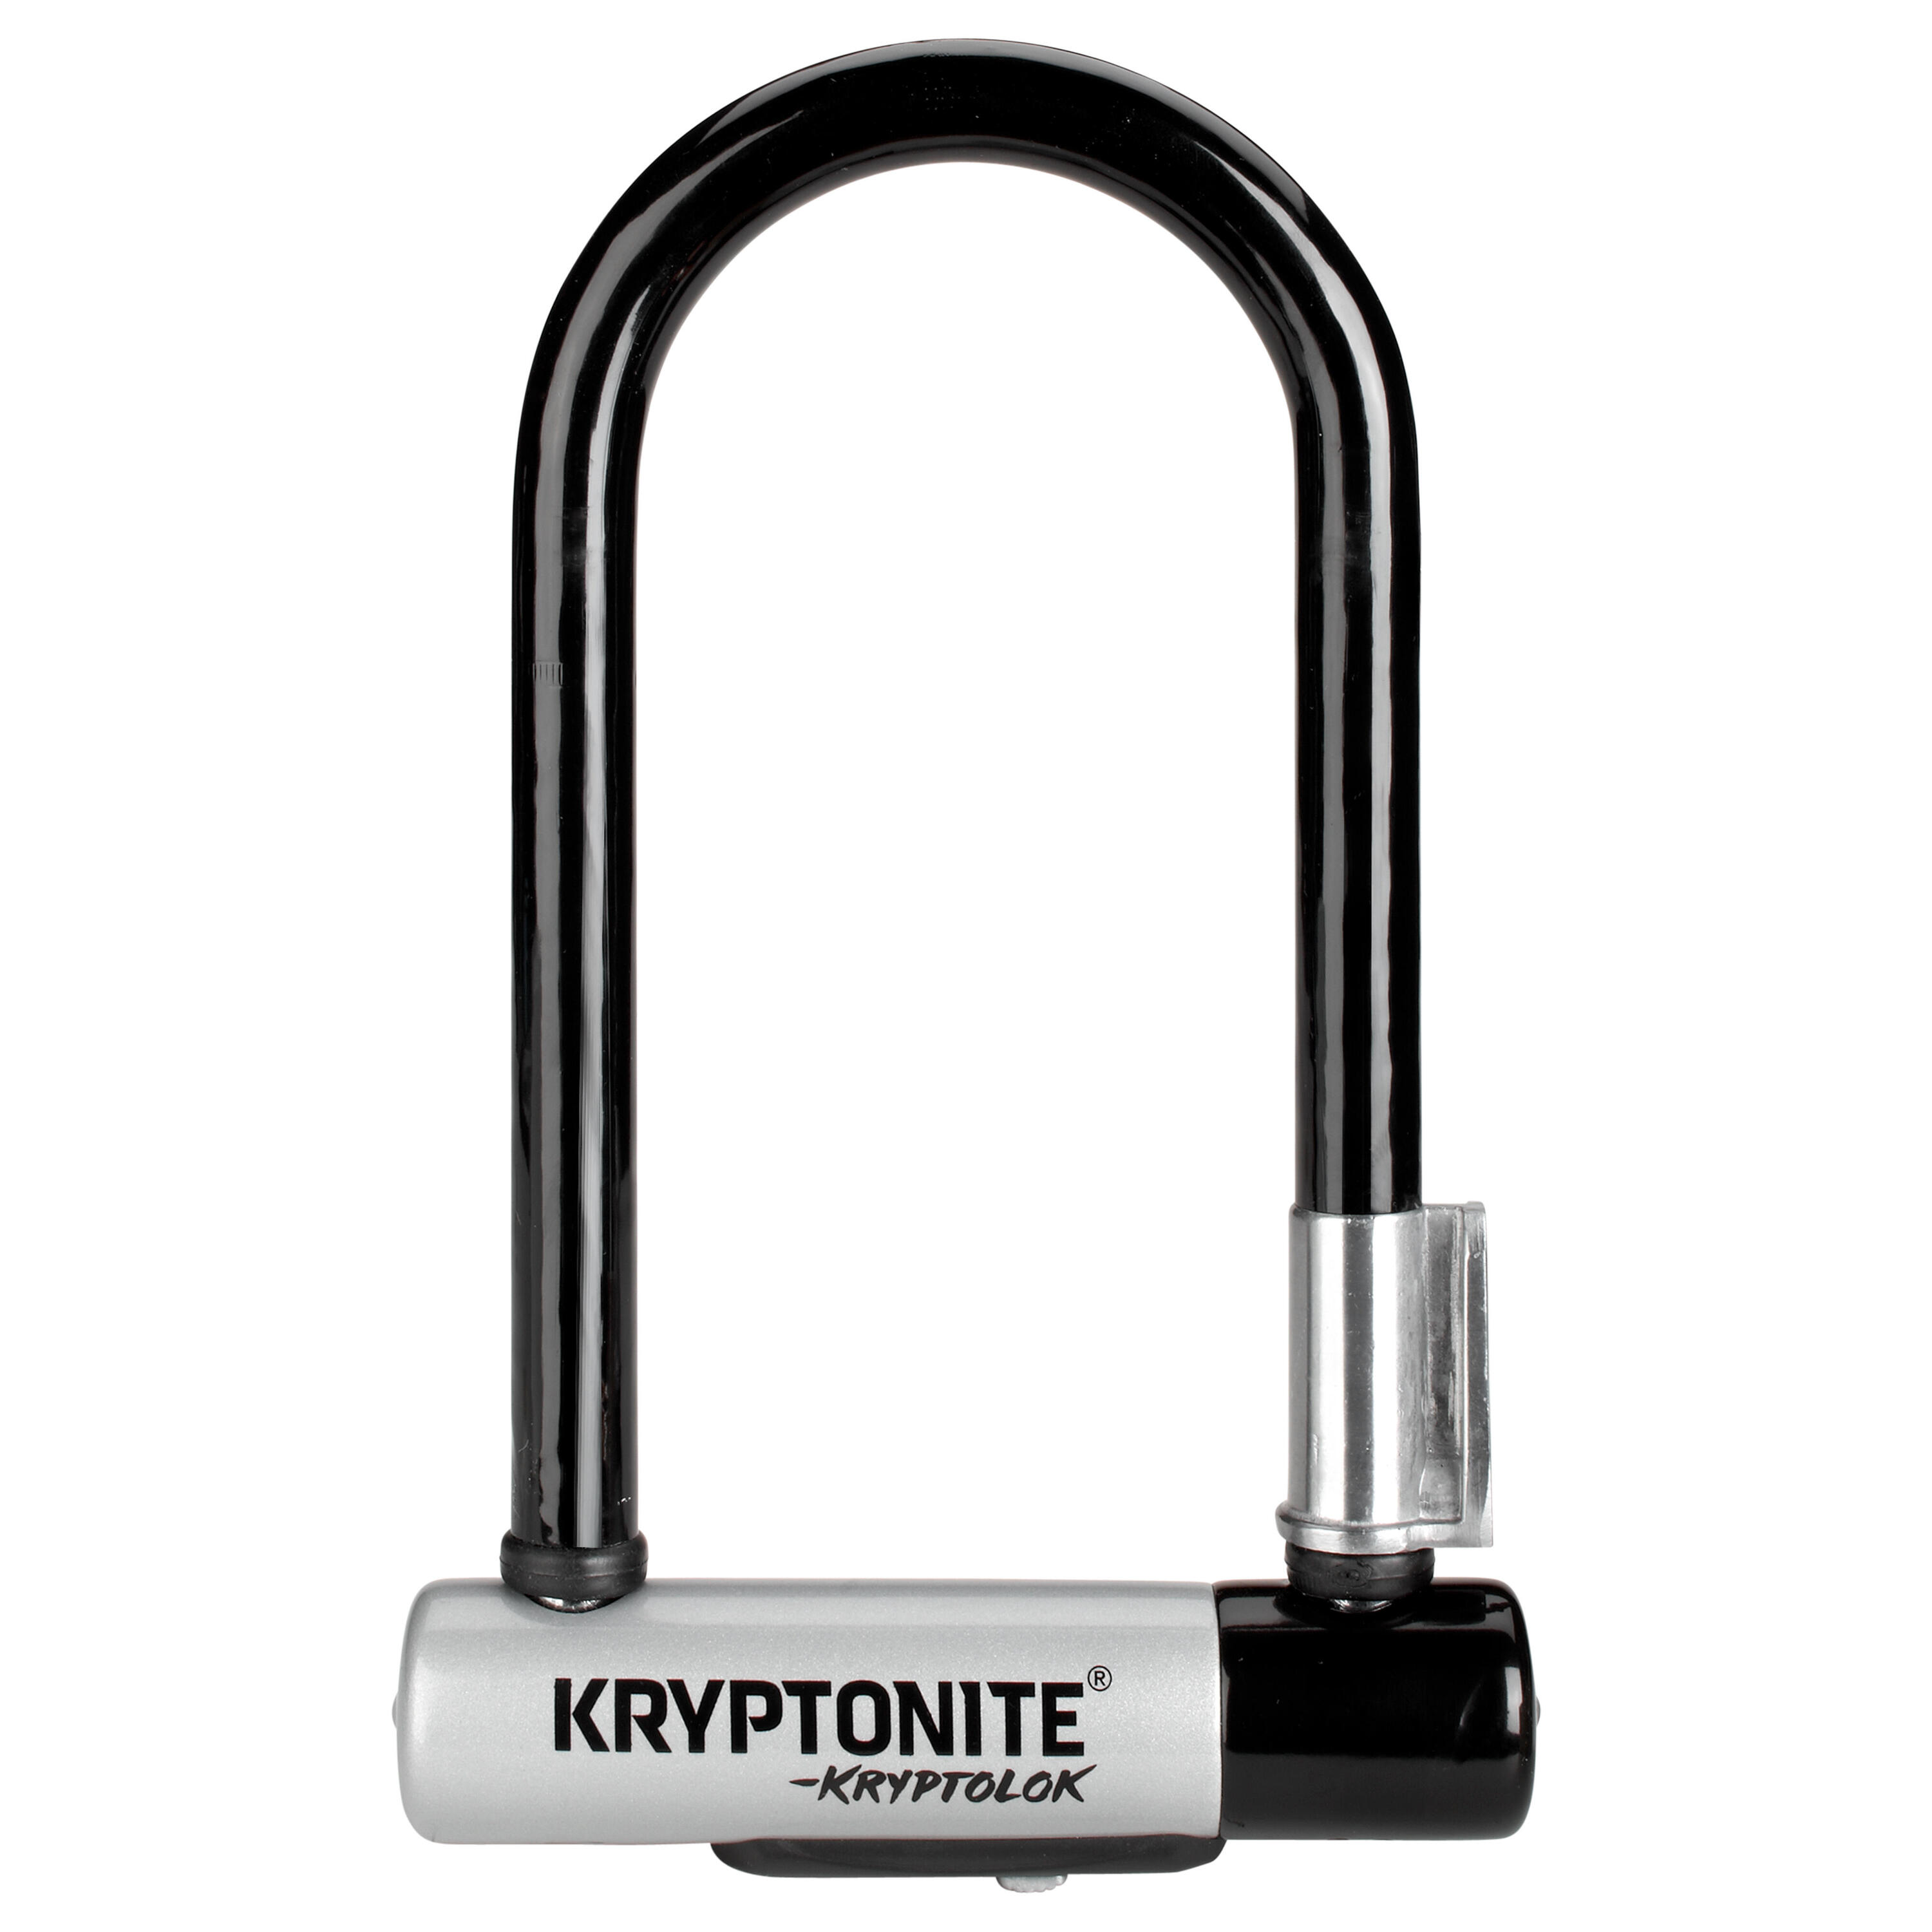 KRYPTONITE Kryptonite Kryptolok Mini U-Lock with Flexframe bracket